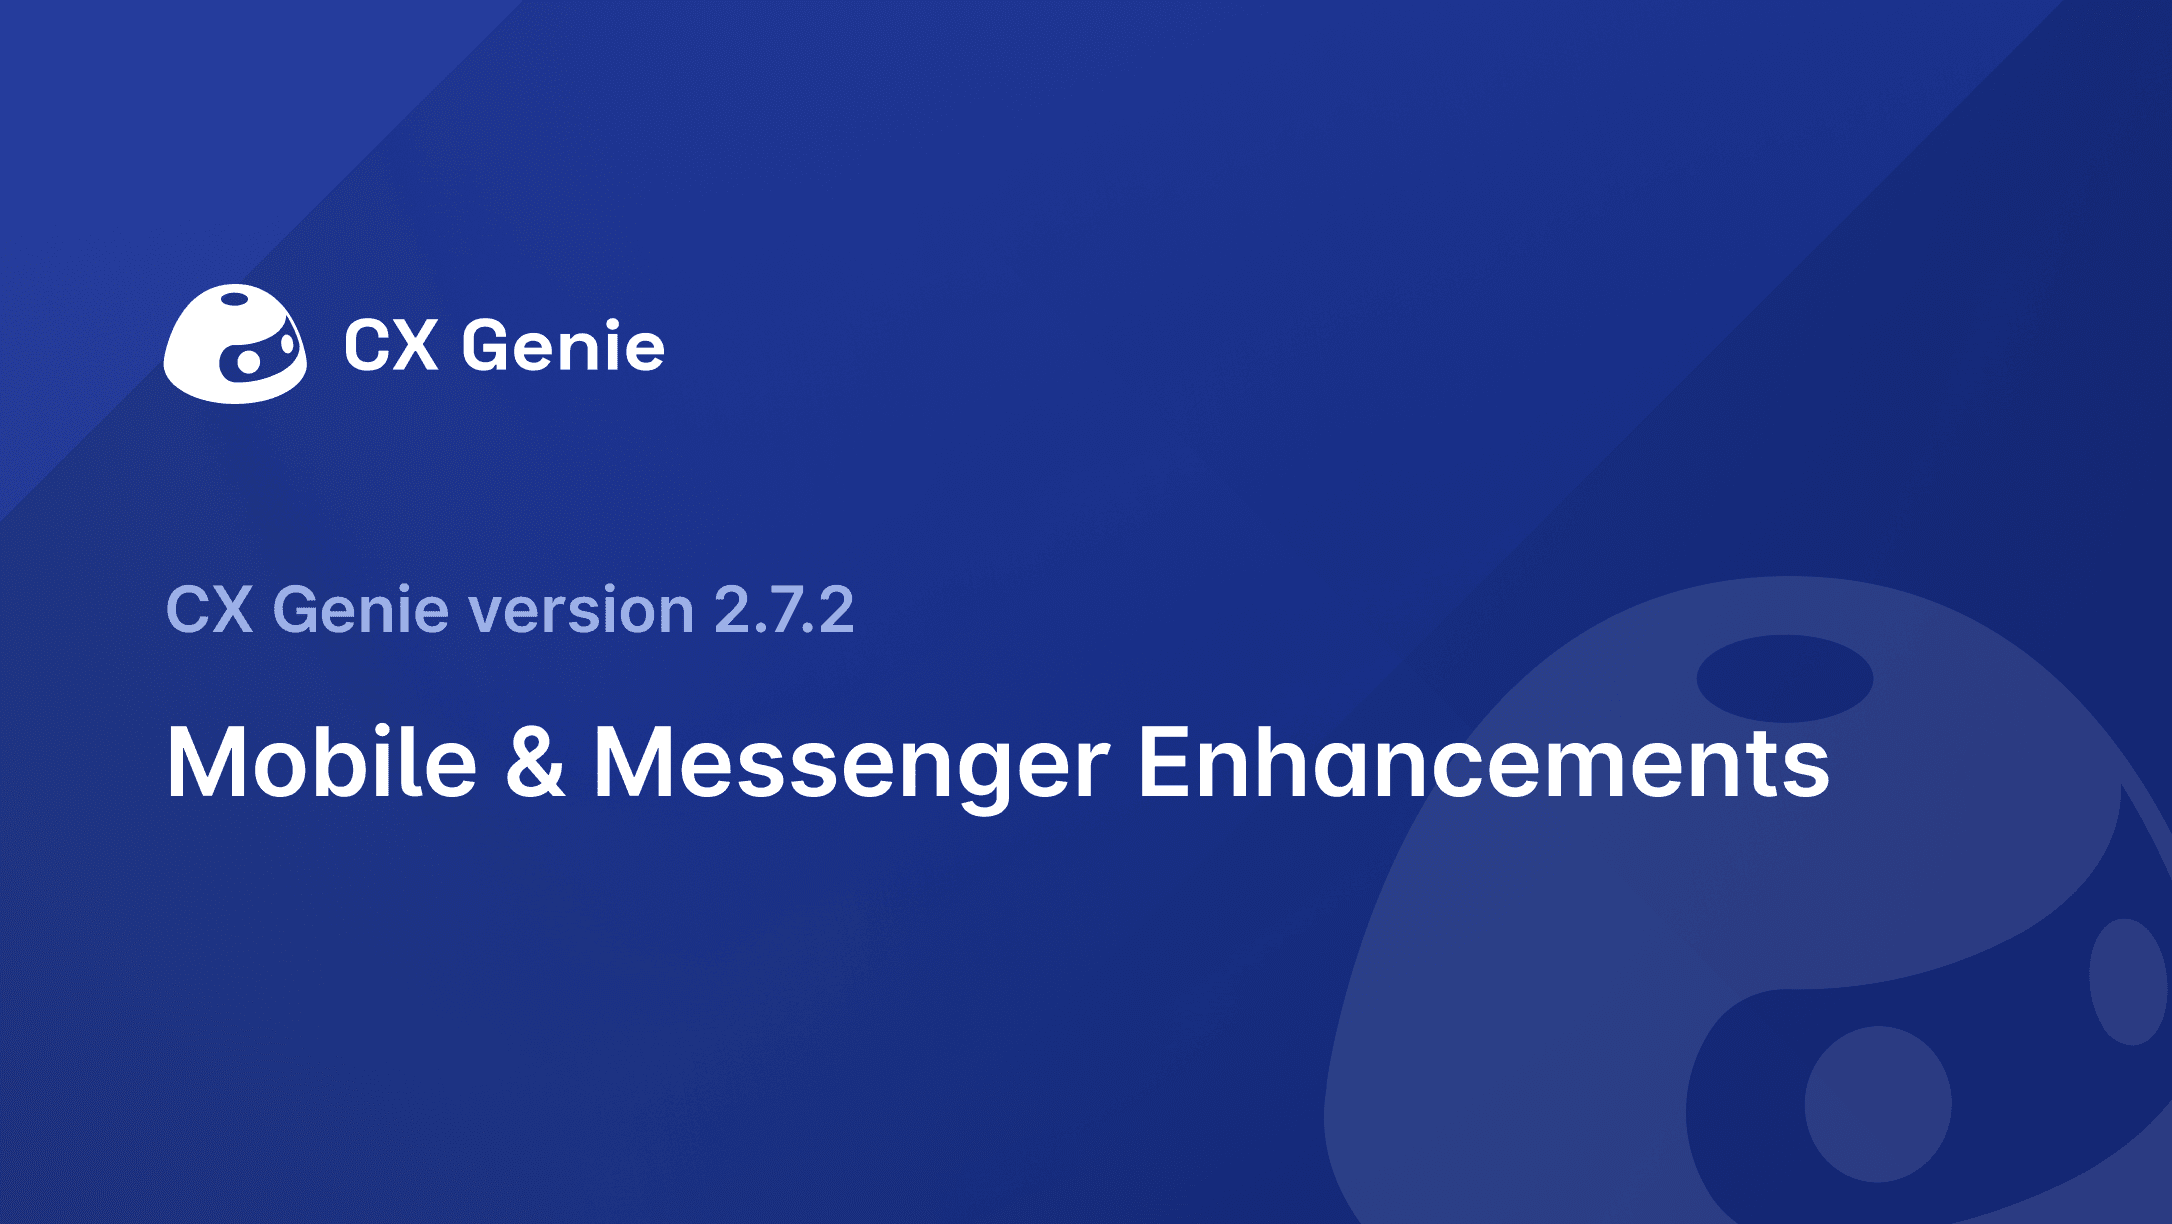 CX Genie Version 2.7.2: Mobile & Messenger Enhancements